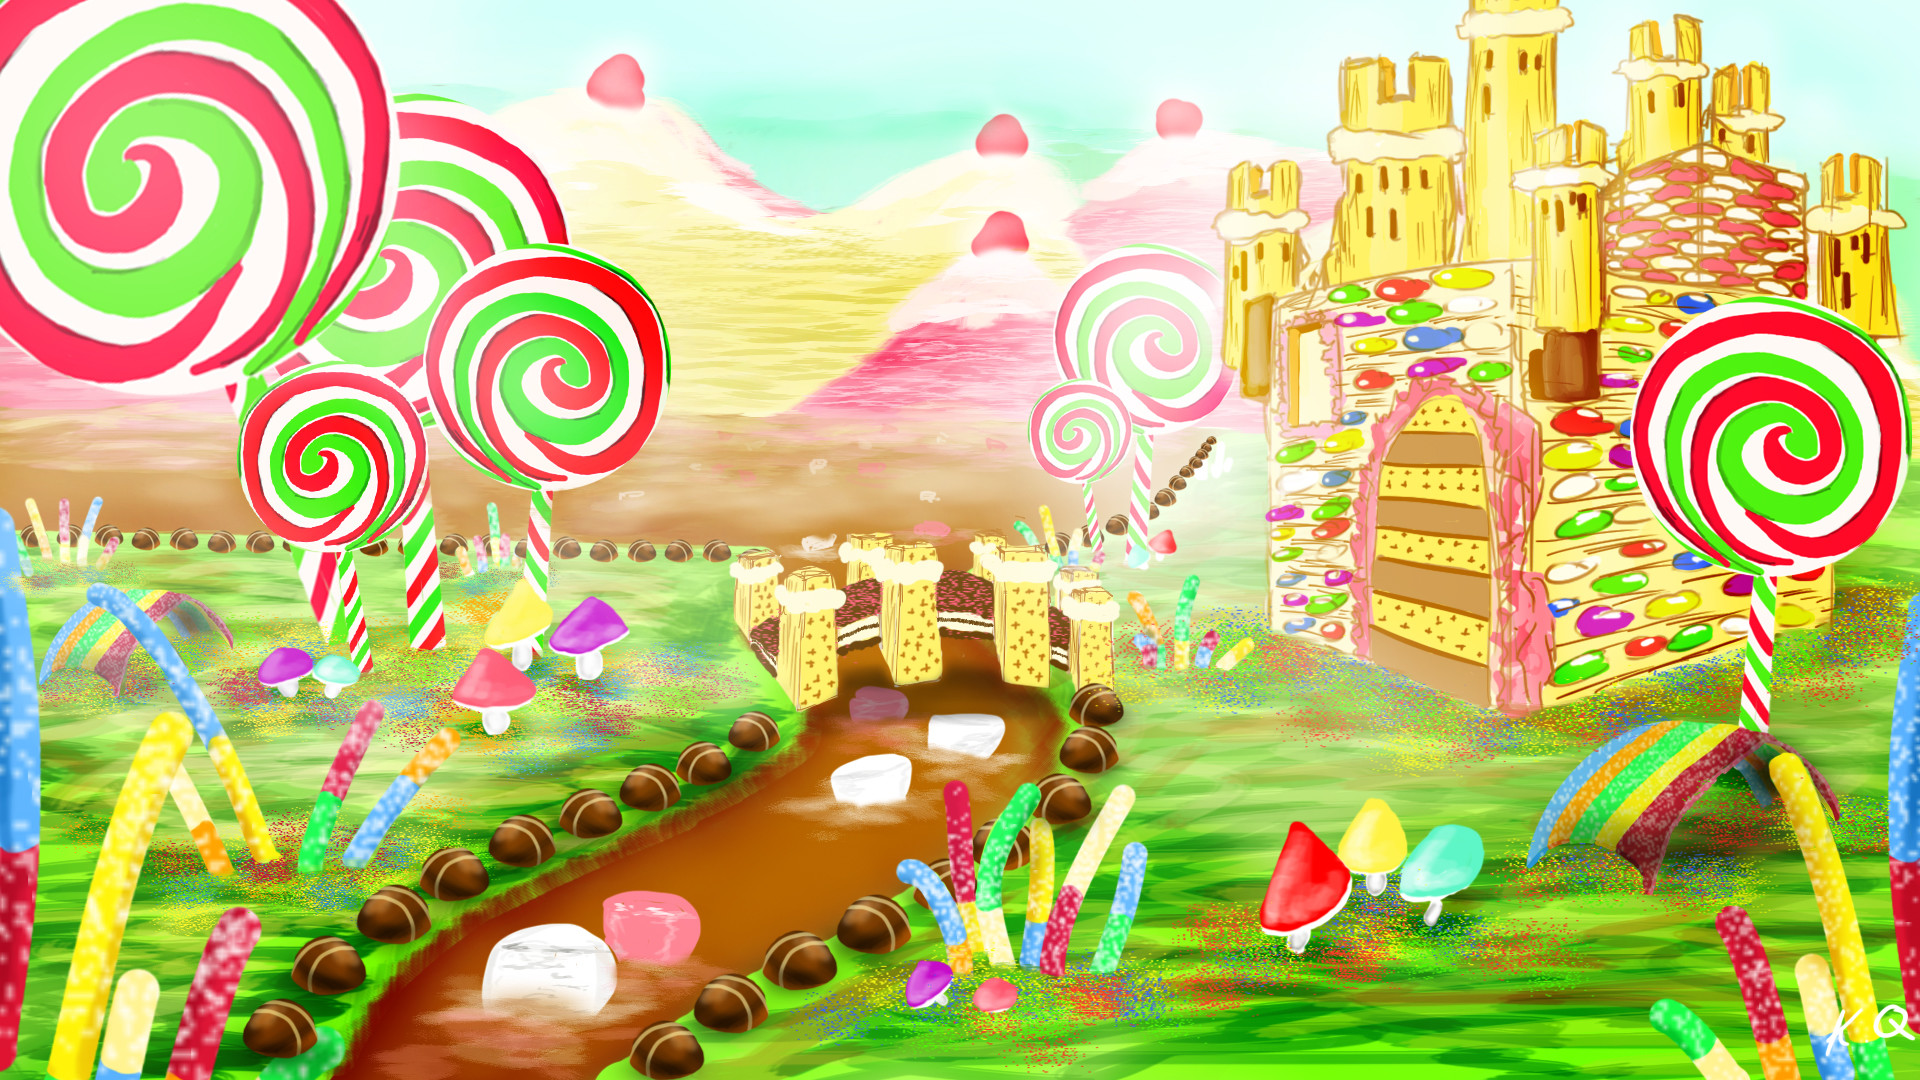 ArtStation - Digital painting 3: Candyland, K Q